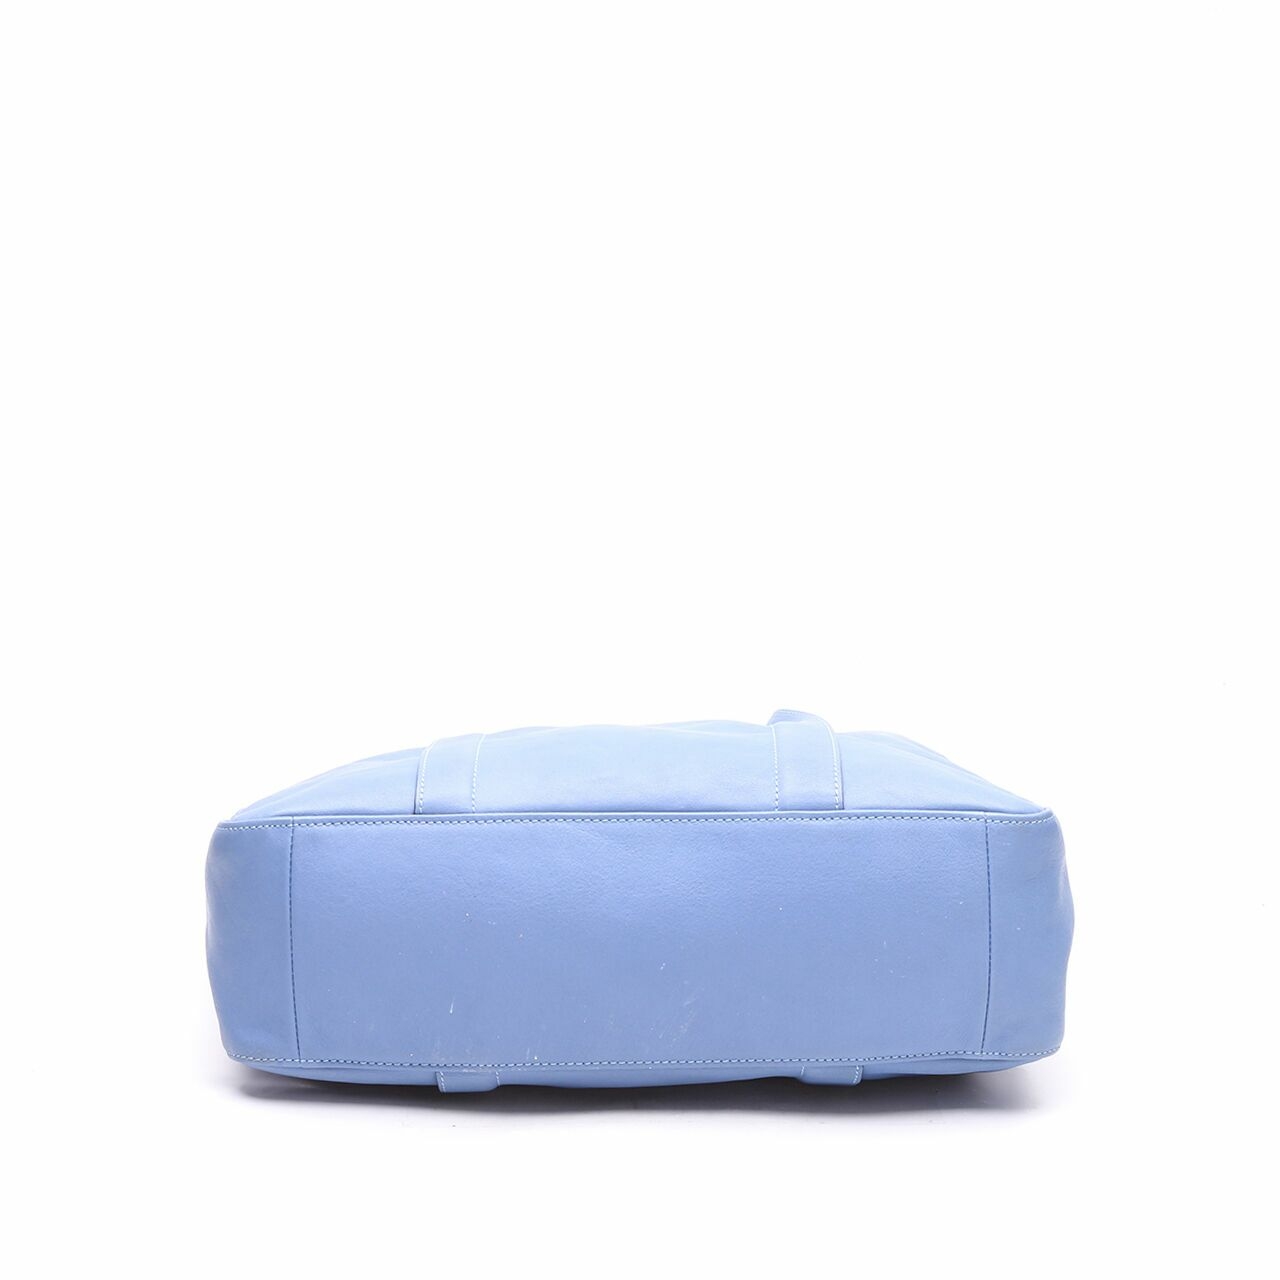 Longchamp 3D M Blue Satchel Bag